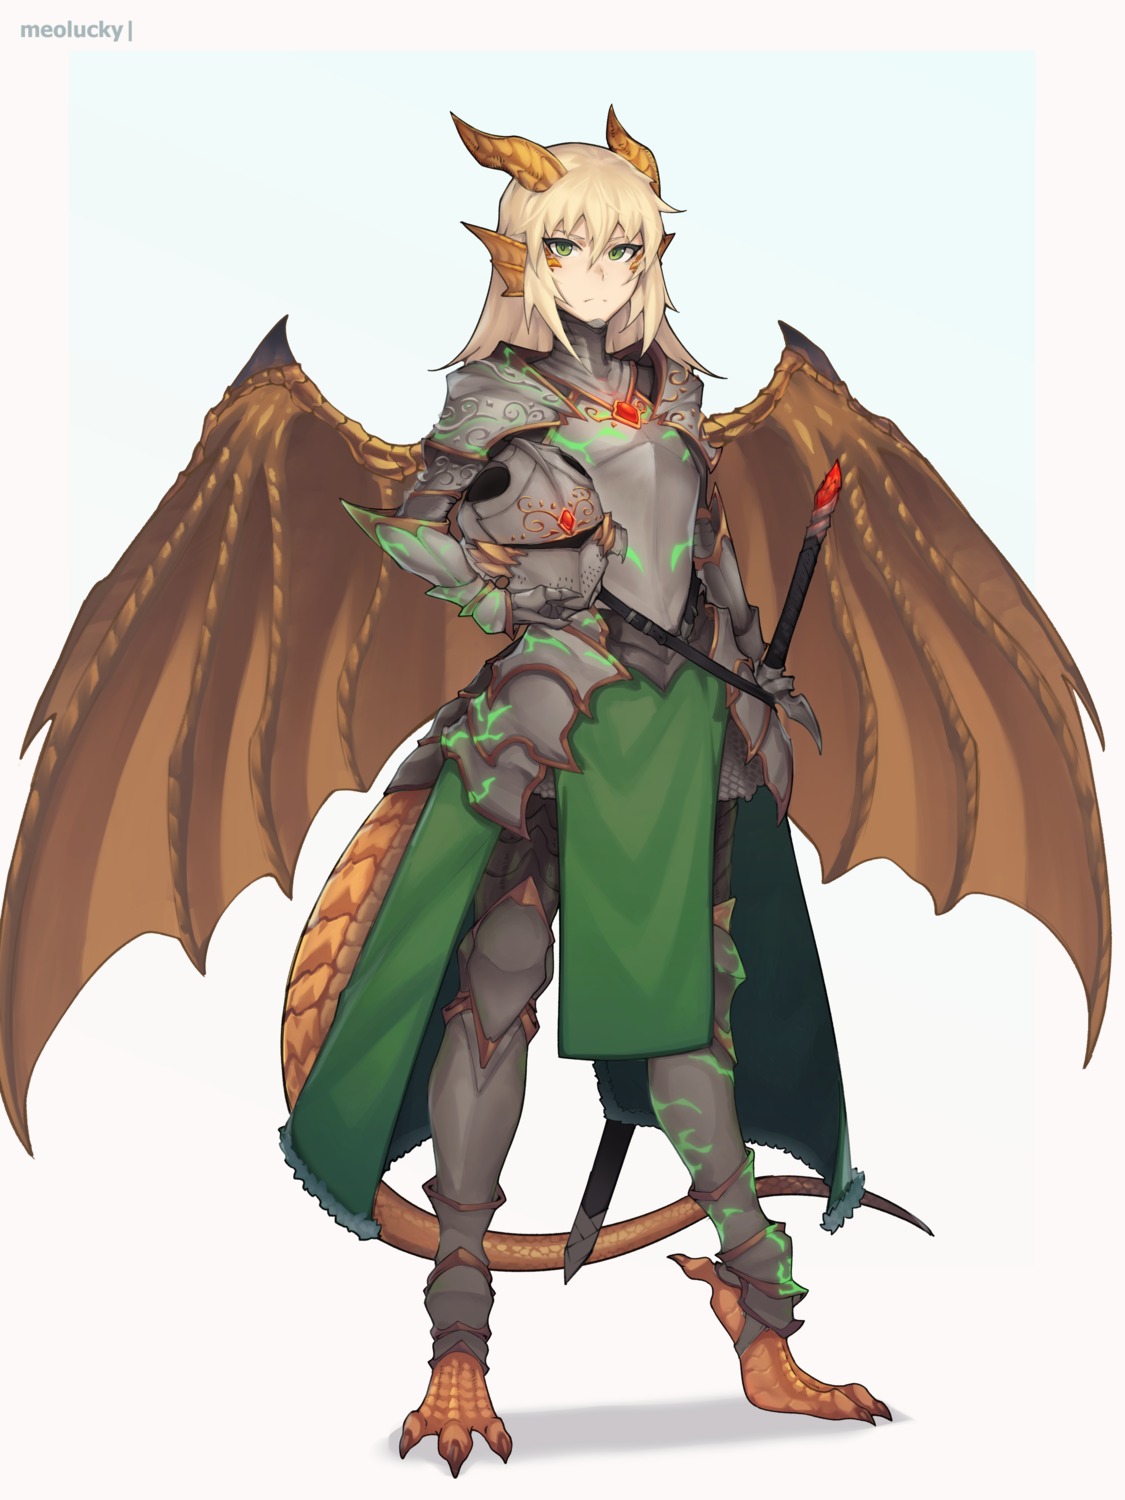 armor horns monster_girl ovosh147 sword tail wings